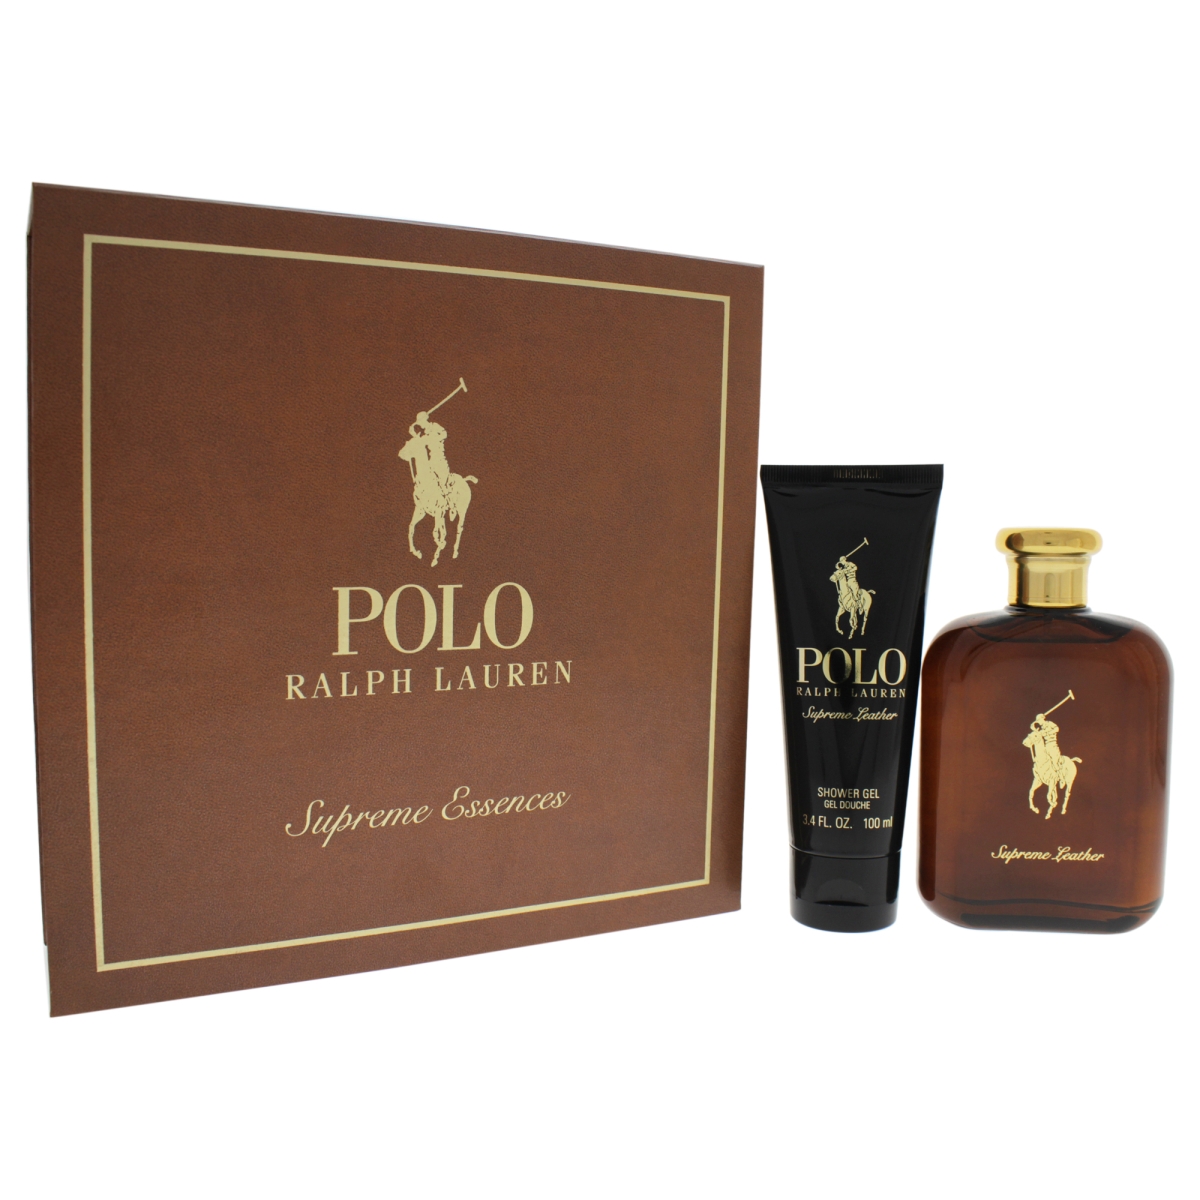 M-gs-3209 Polo Supreme Essences Gift Set For Men, 4.2oz Polo Supreme Leather Edp Spray - 2 Piece Gift Set